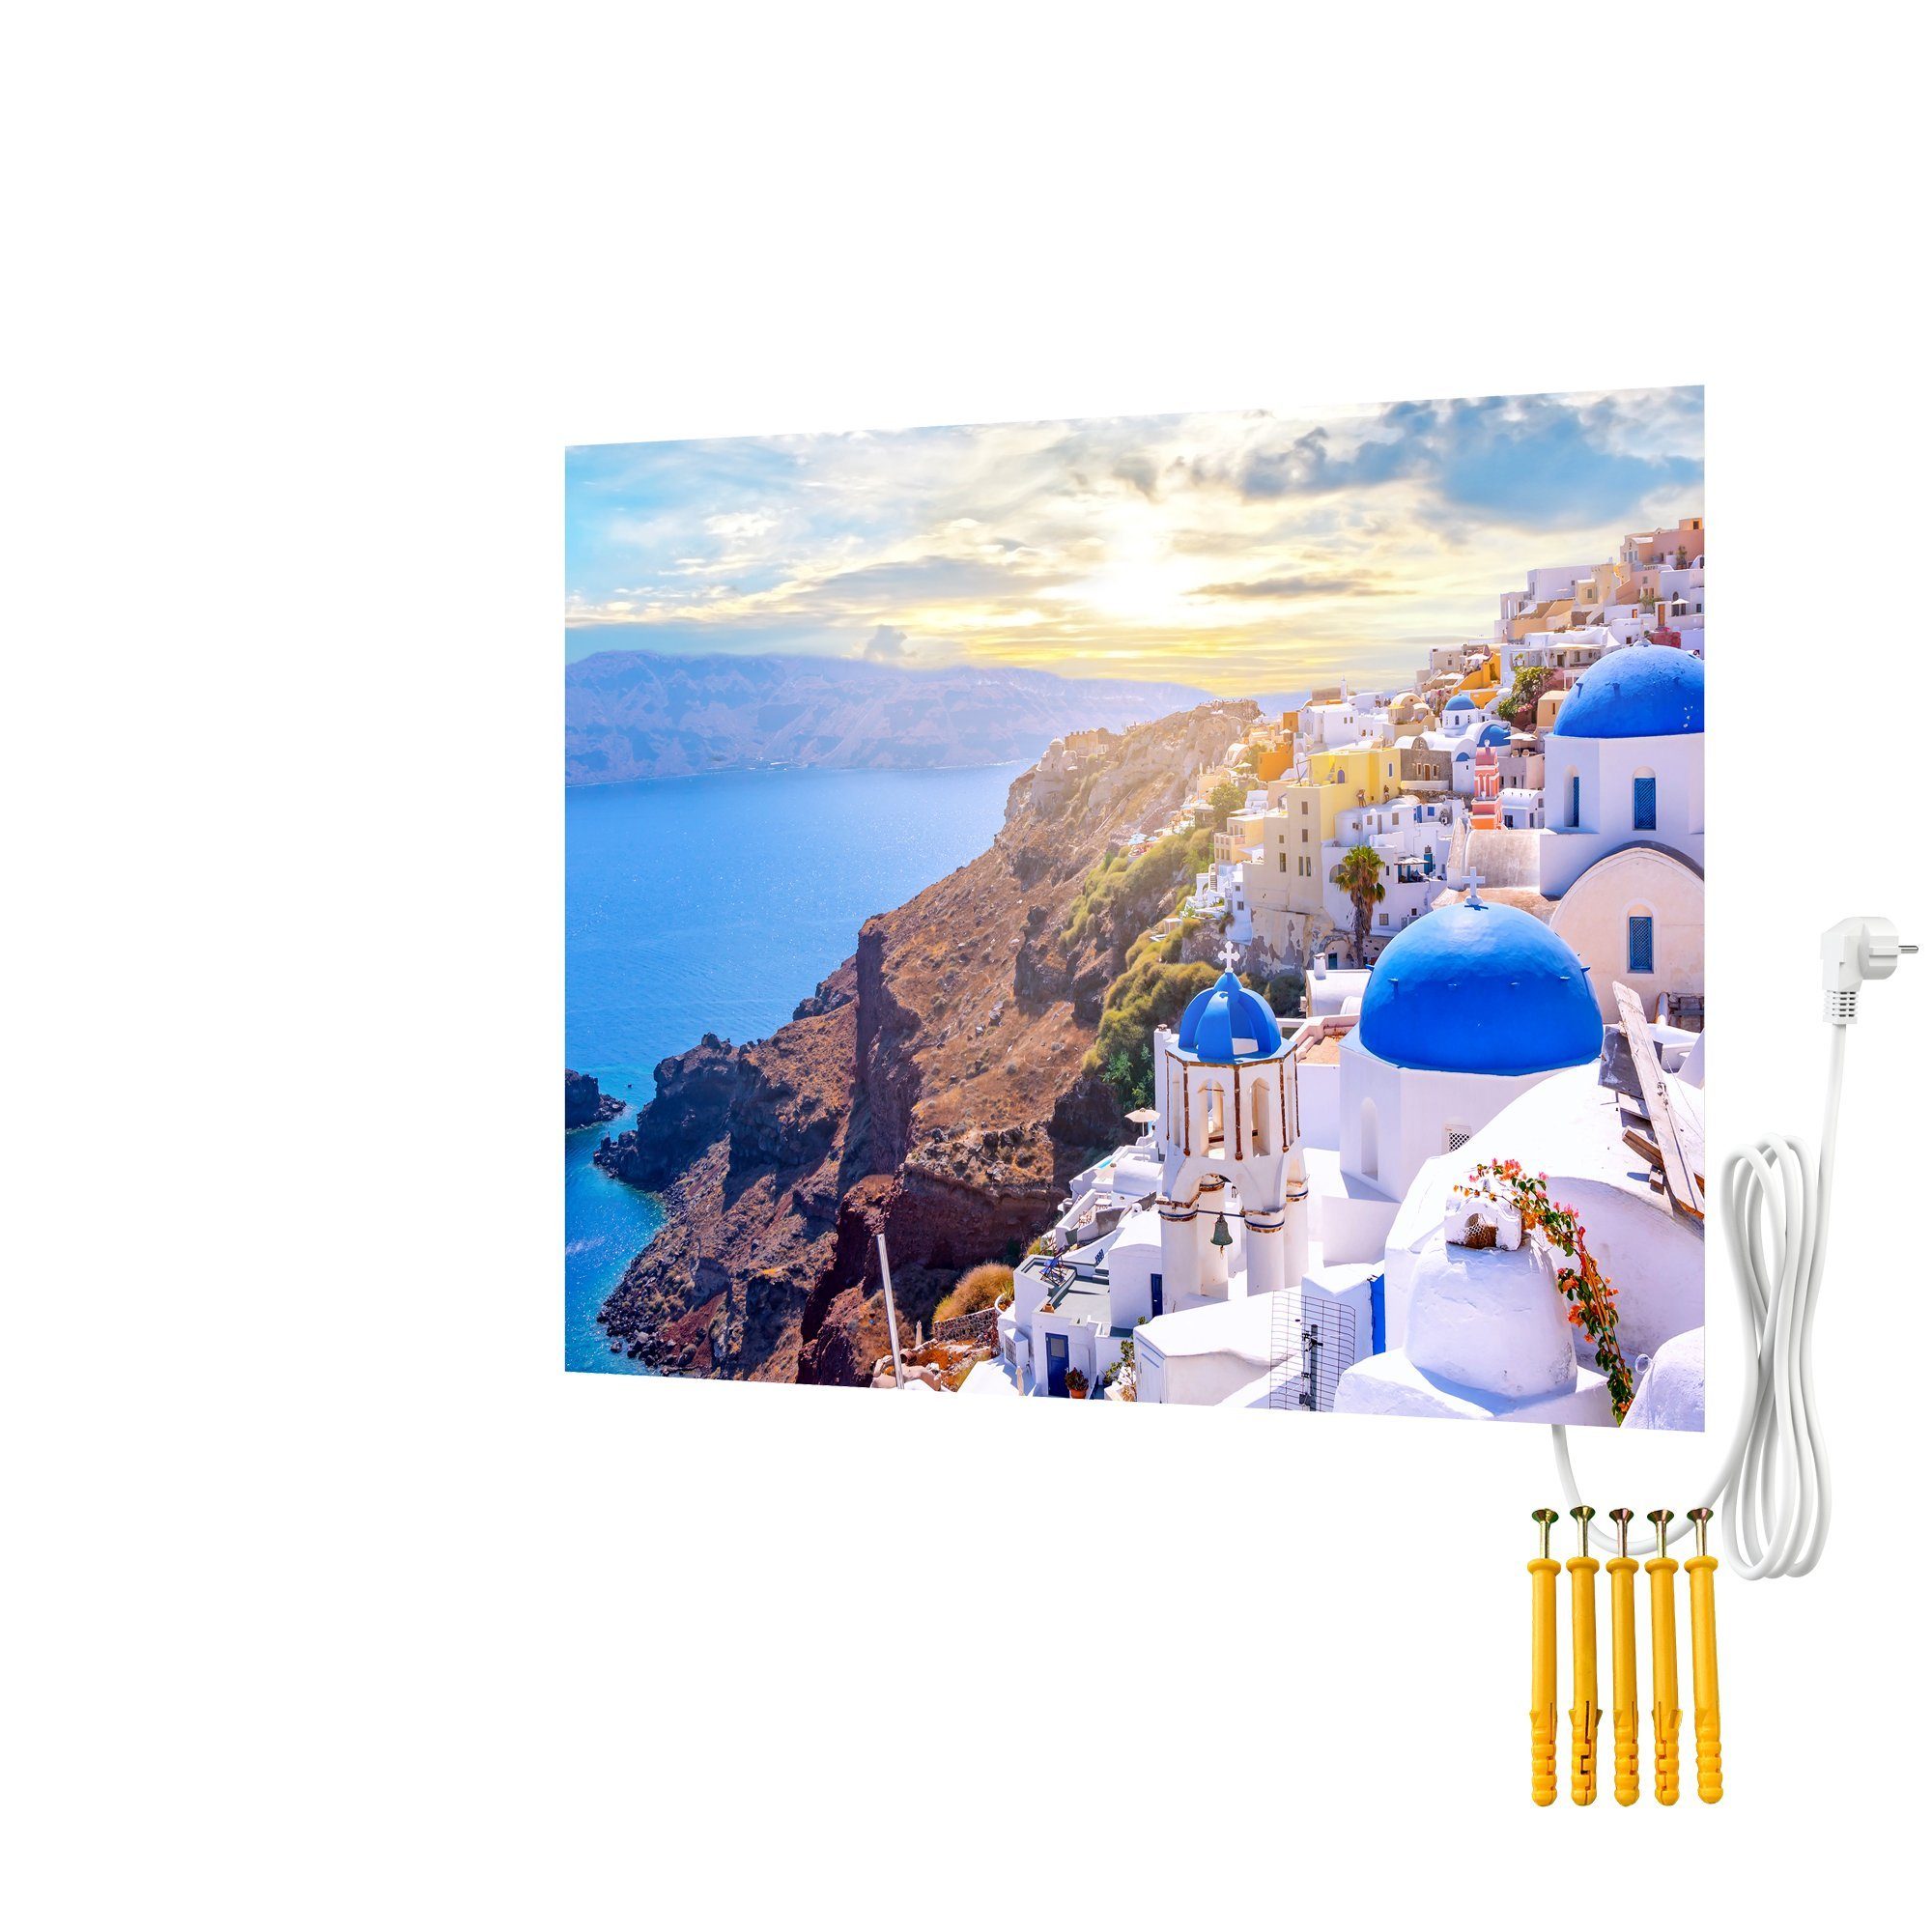 Bringer Infrarotheizung Bildheizung, Rahmenlose Bild Infrarotheizung, Motiv: Santorini, Griechenland